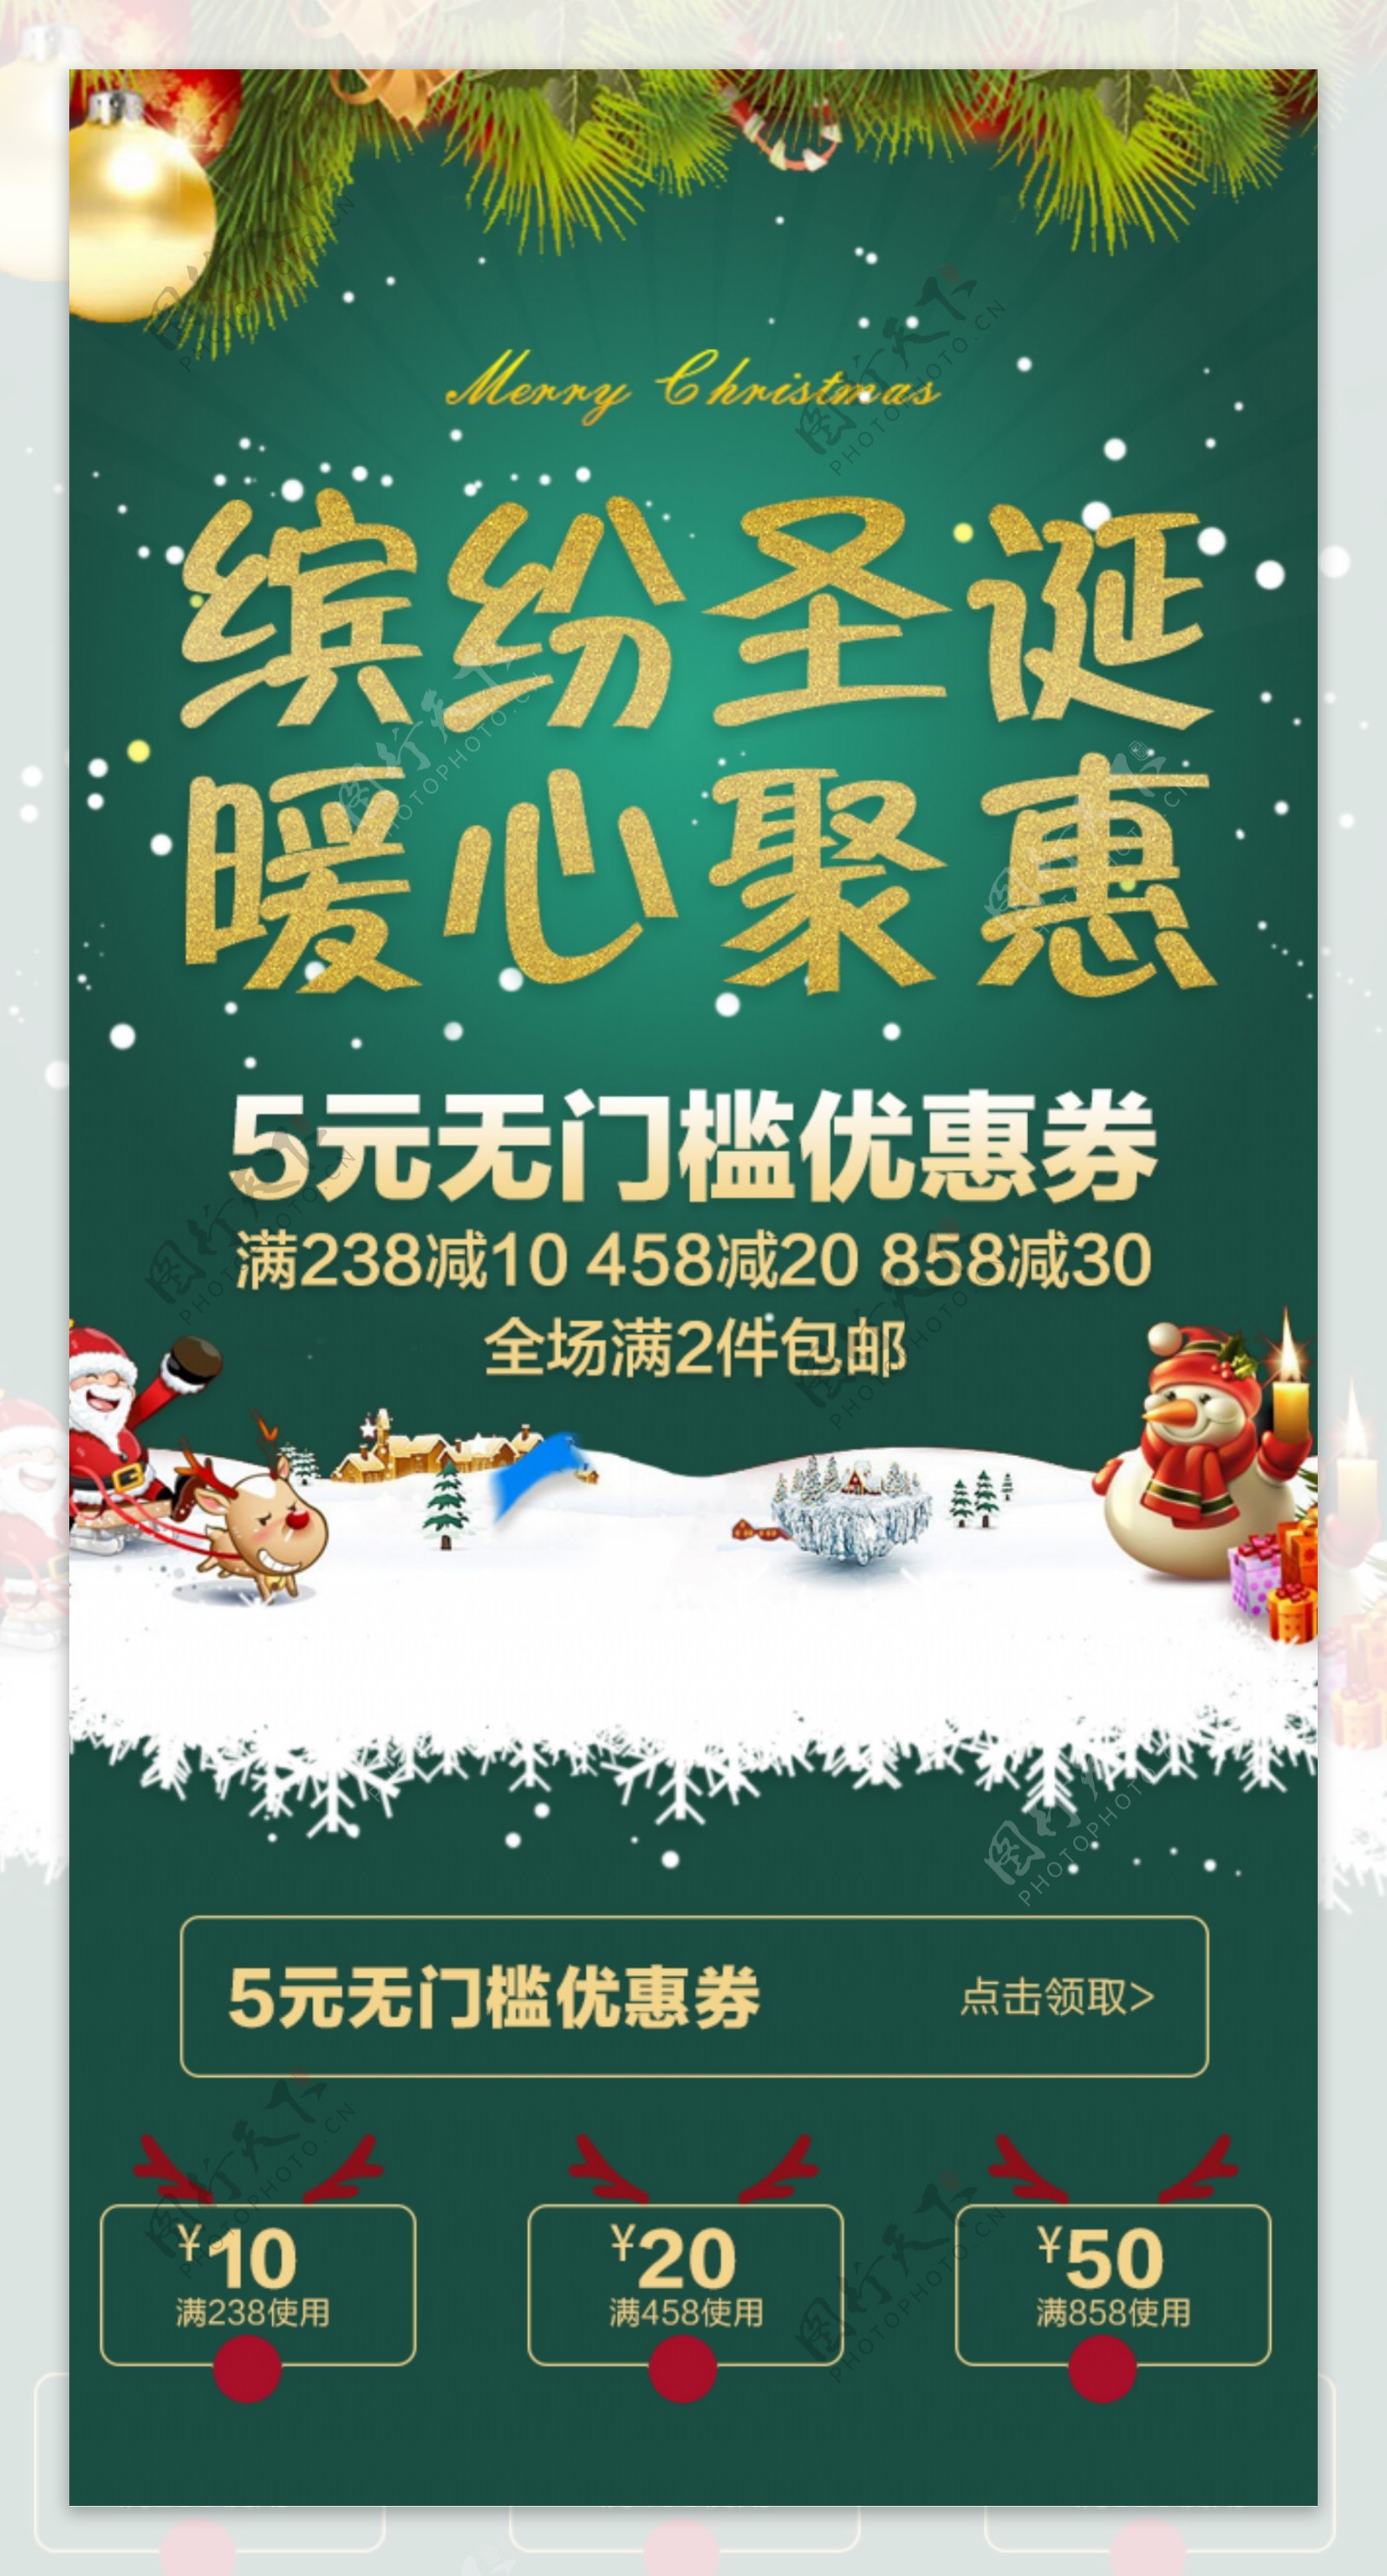 2016圣诞节淘宝手机端首页促销氛围海报